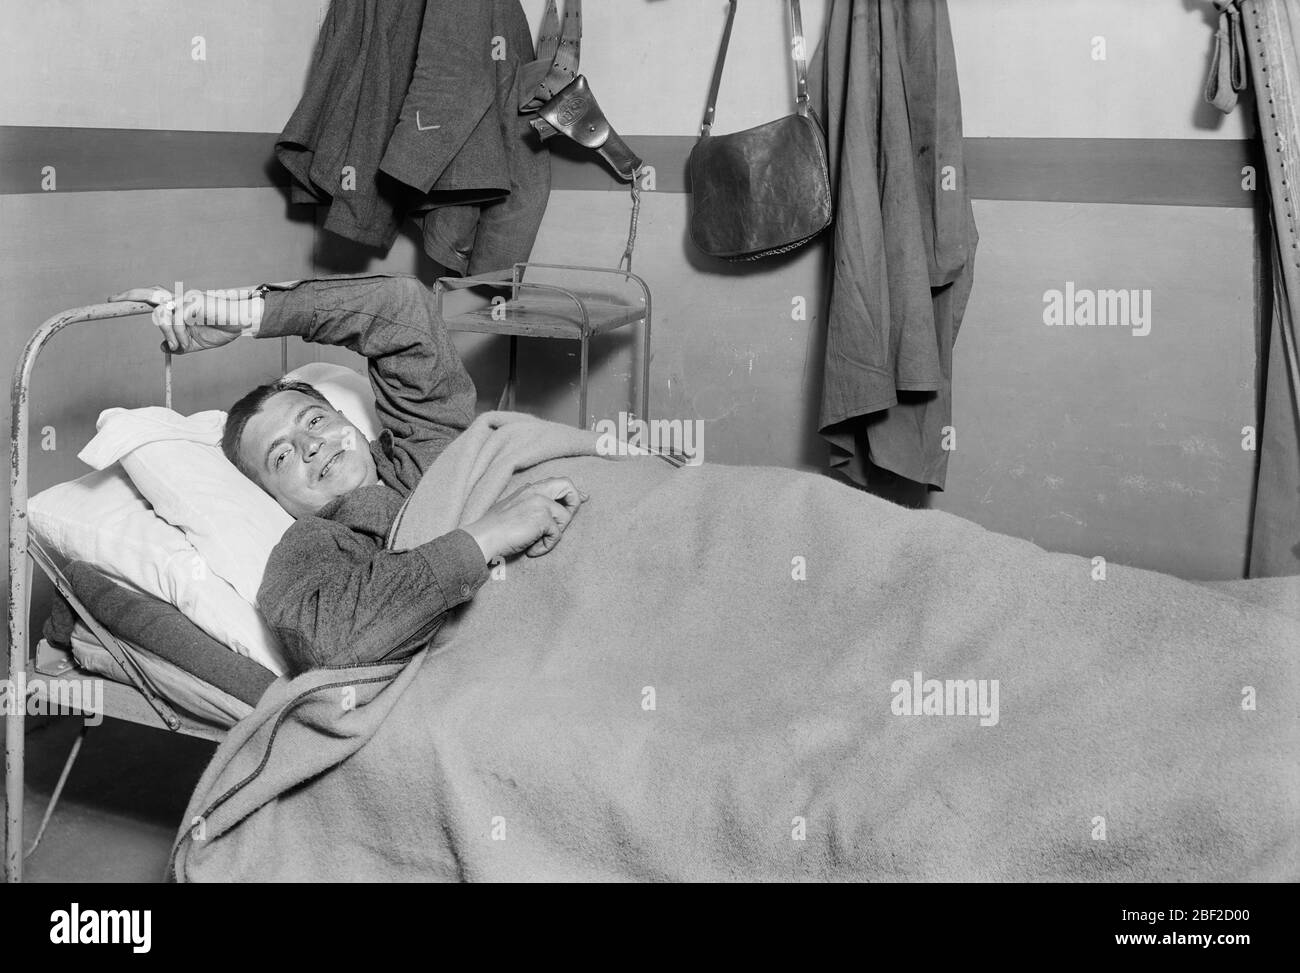 Amerikanischer Soldat, der in der Kantine des amerikanischen Roten Kreuzes, Chateauroux, Frankreich, ausgeruht ist, Lewis Wickes Hine, Photographensammlung des amerikanischen Roten Kreuzes, Oktober 1918 Stockfoto